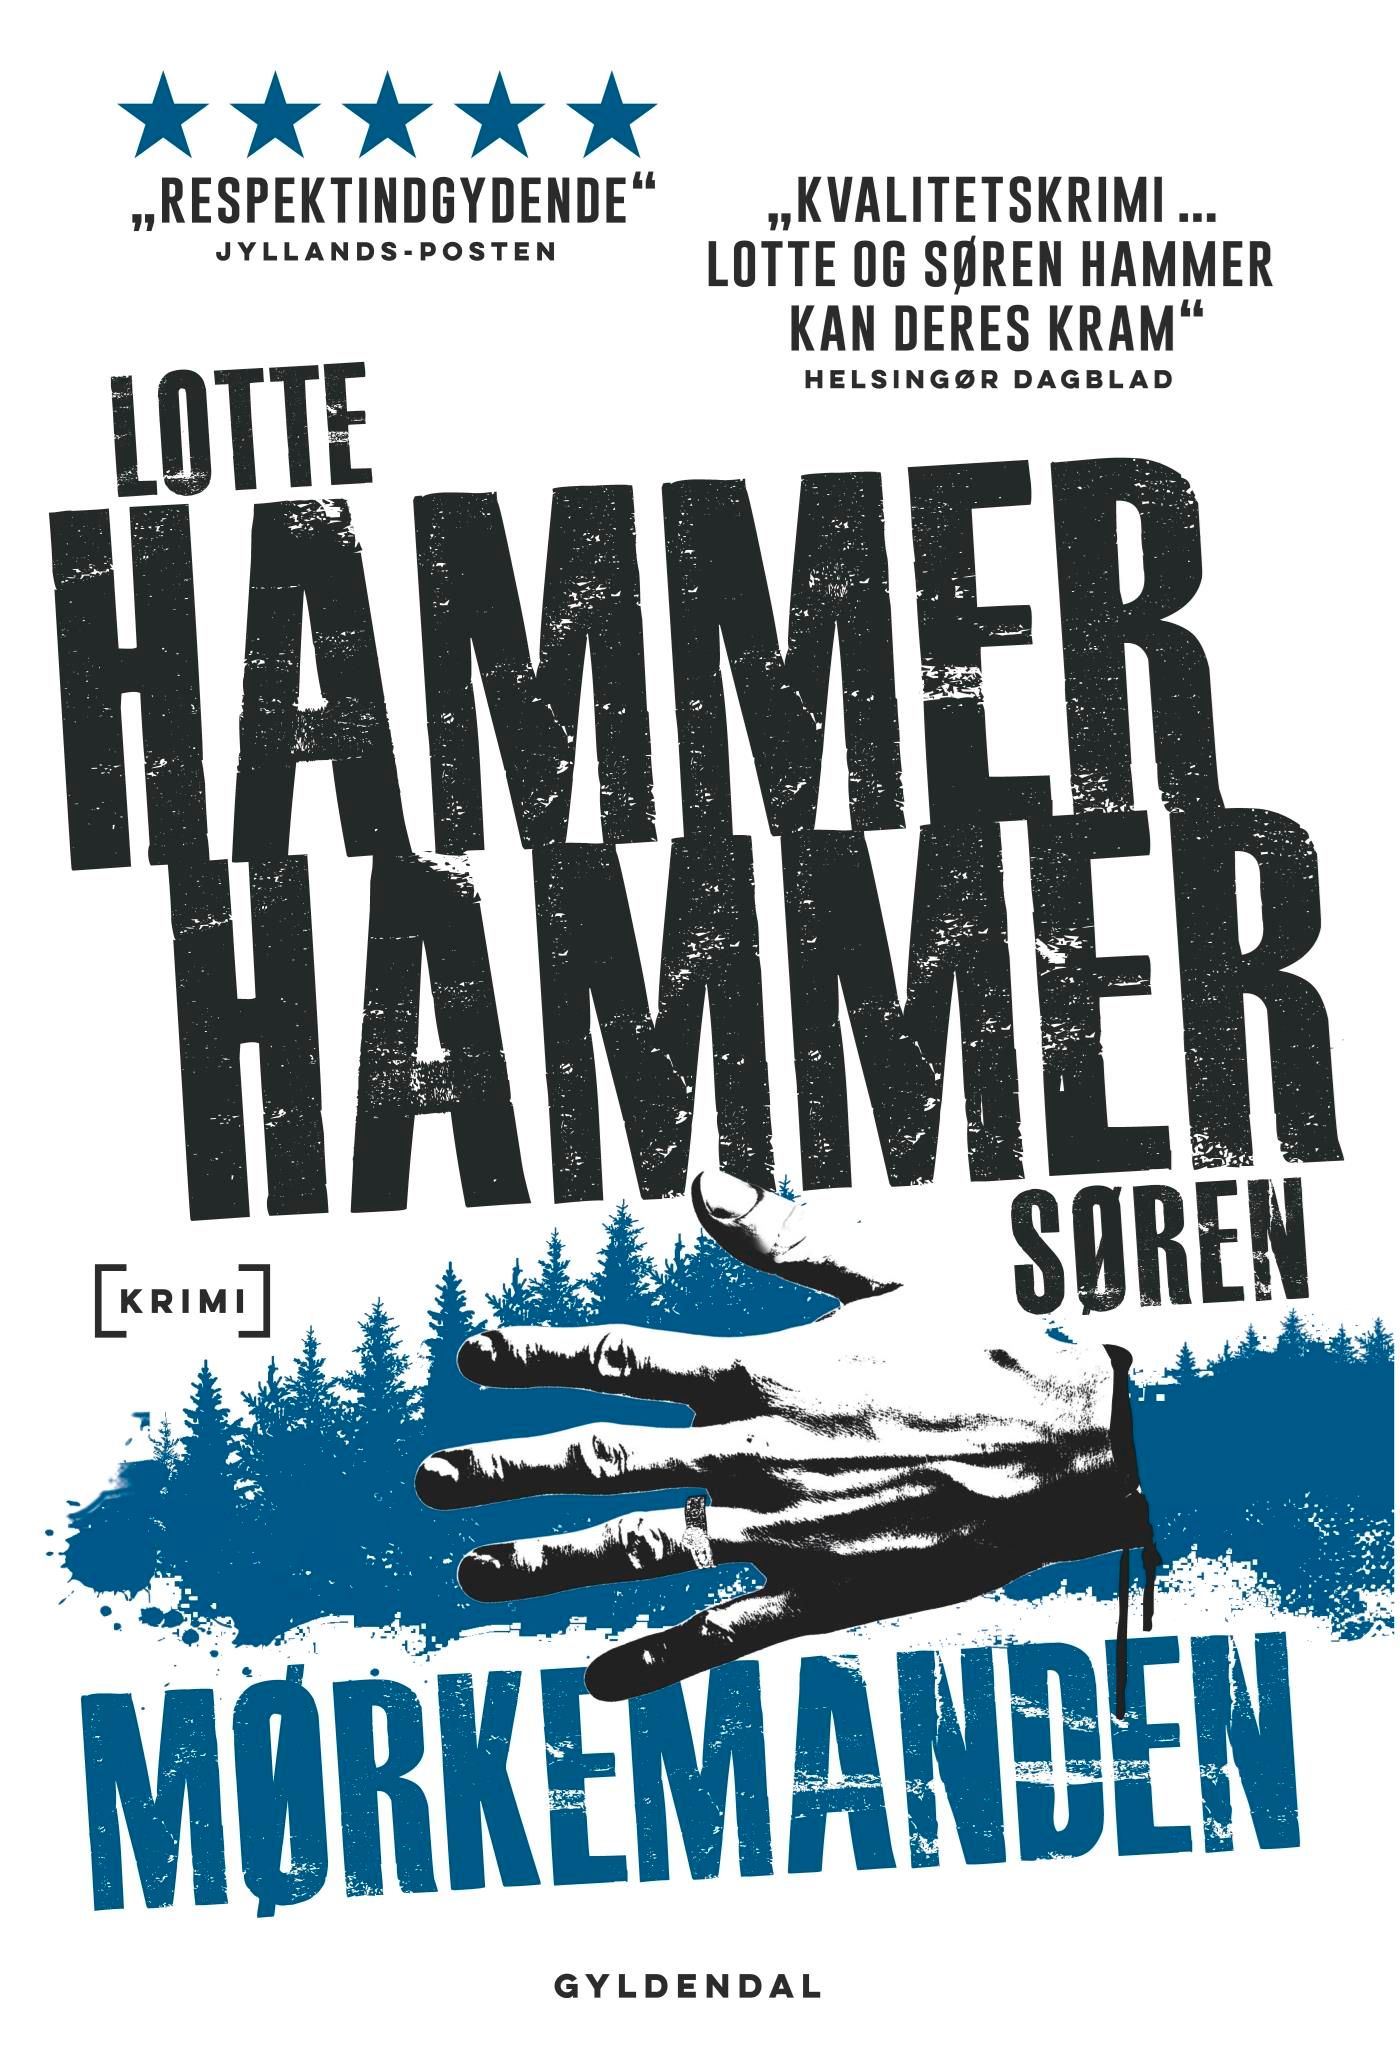 Mørkemanden, eBook by Lotte og Søren Hammer